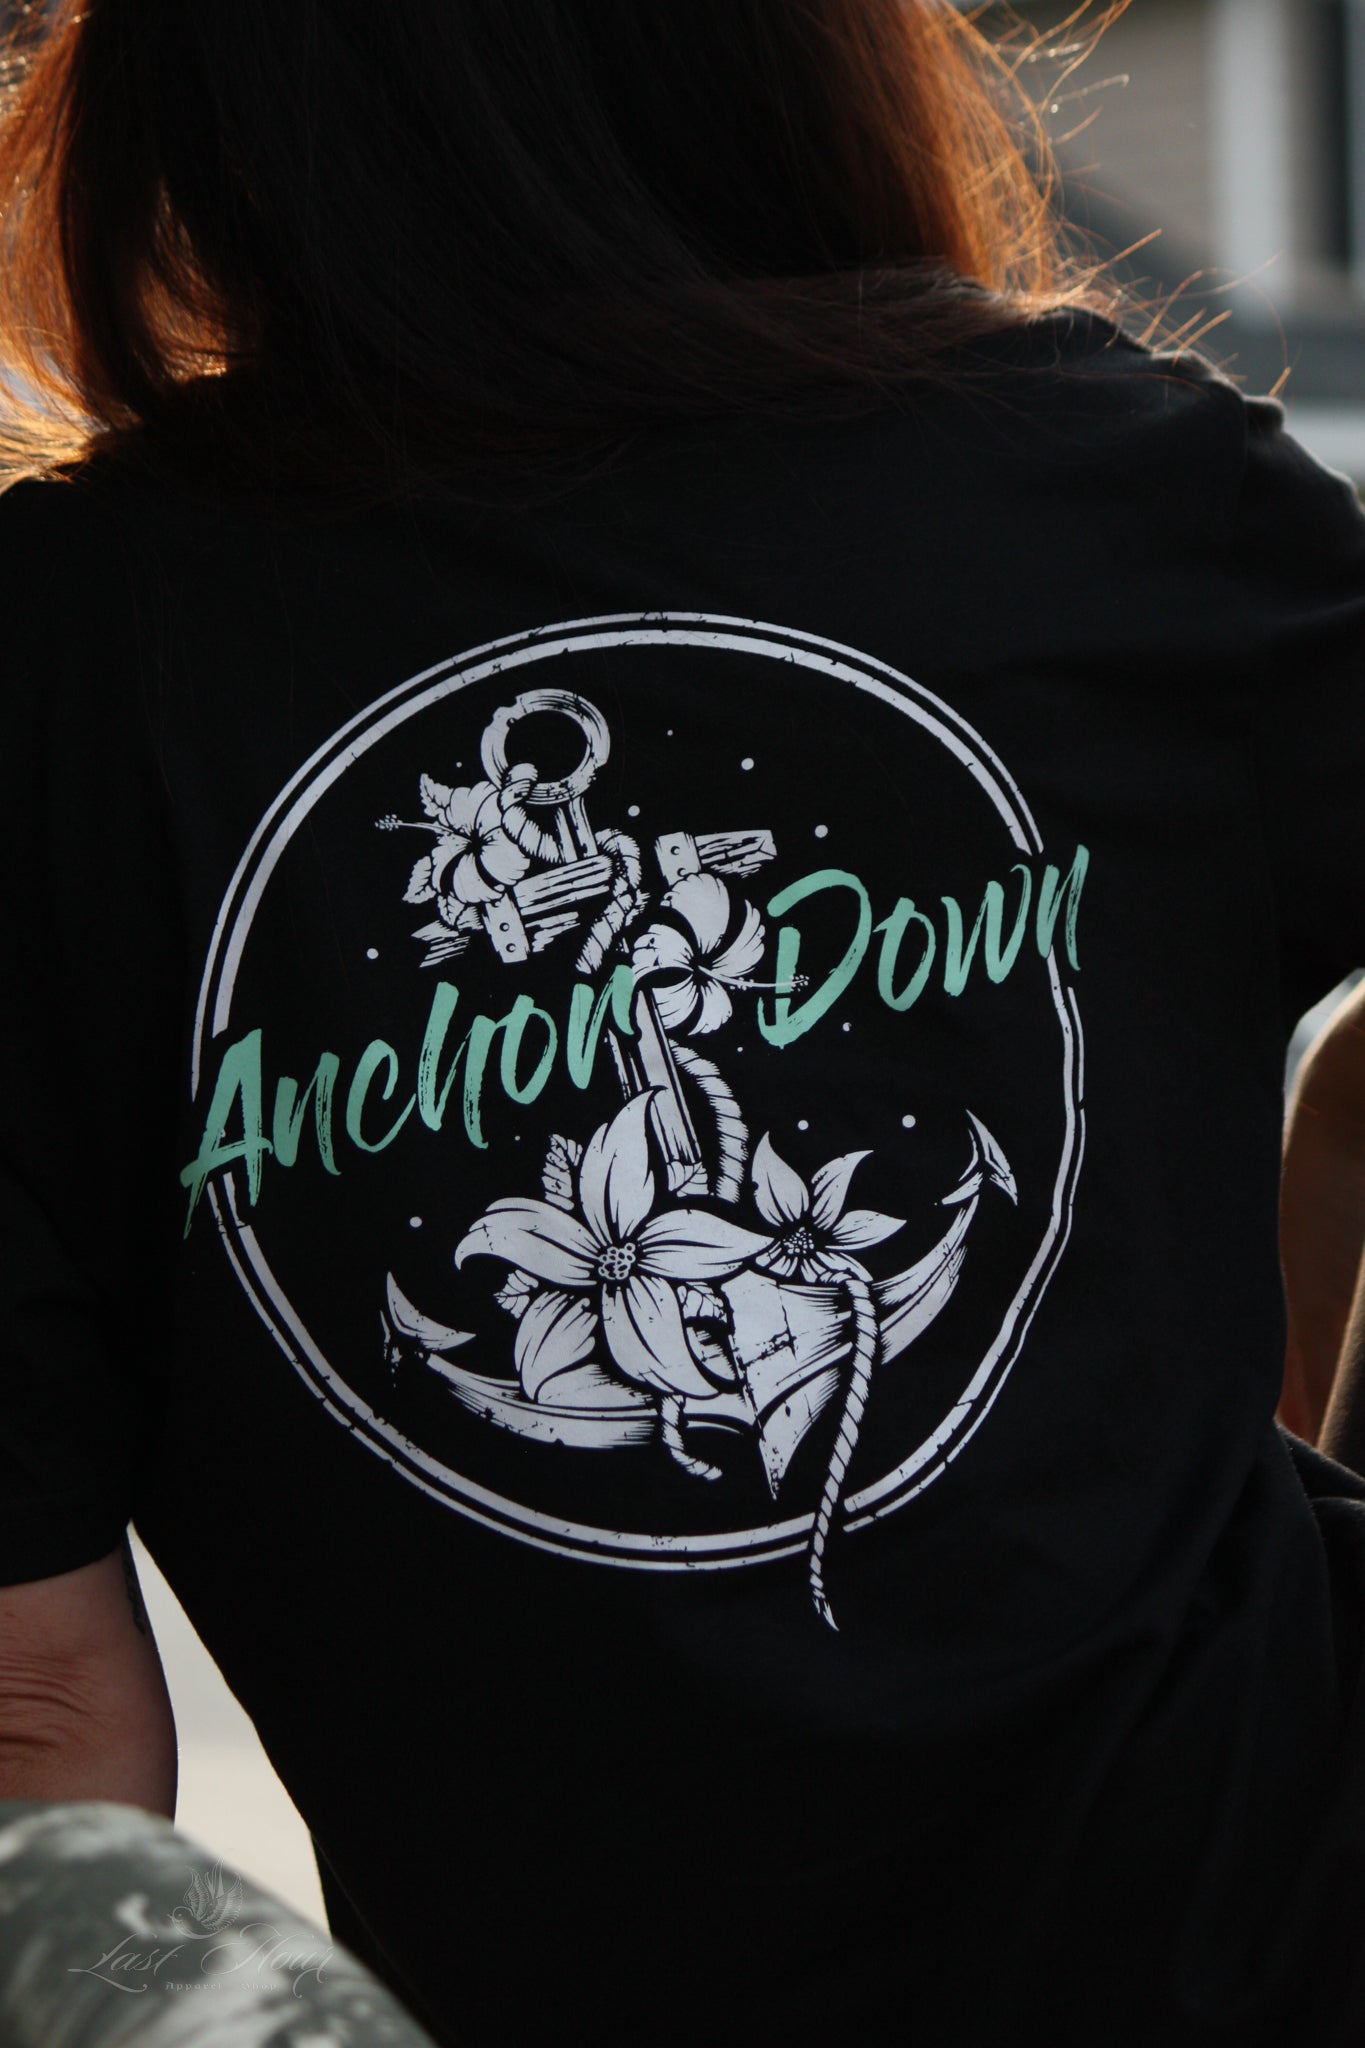 "'Anchor Down" Tee